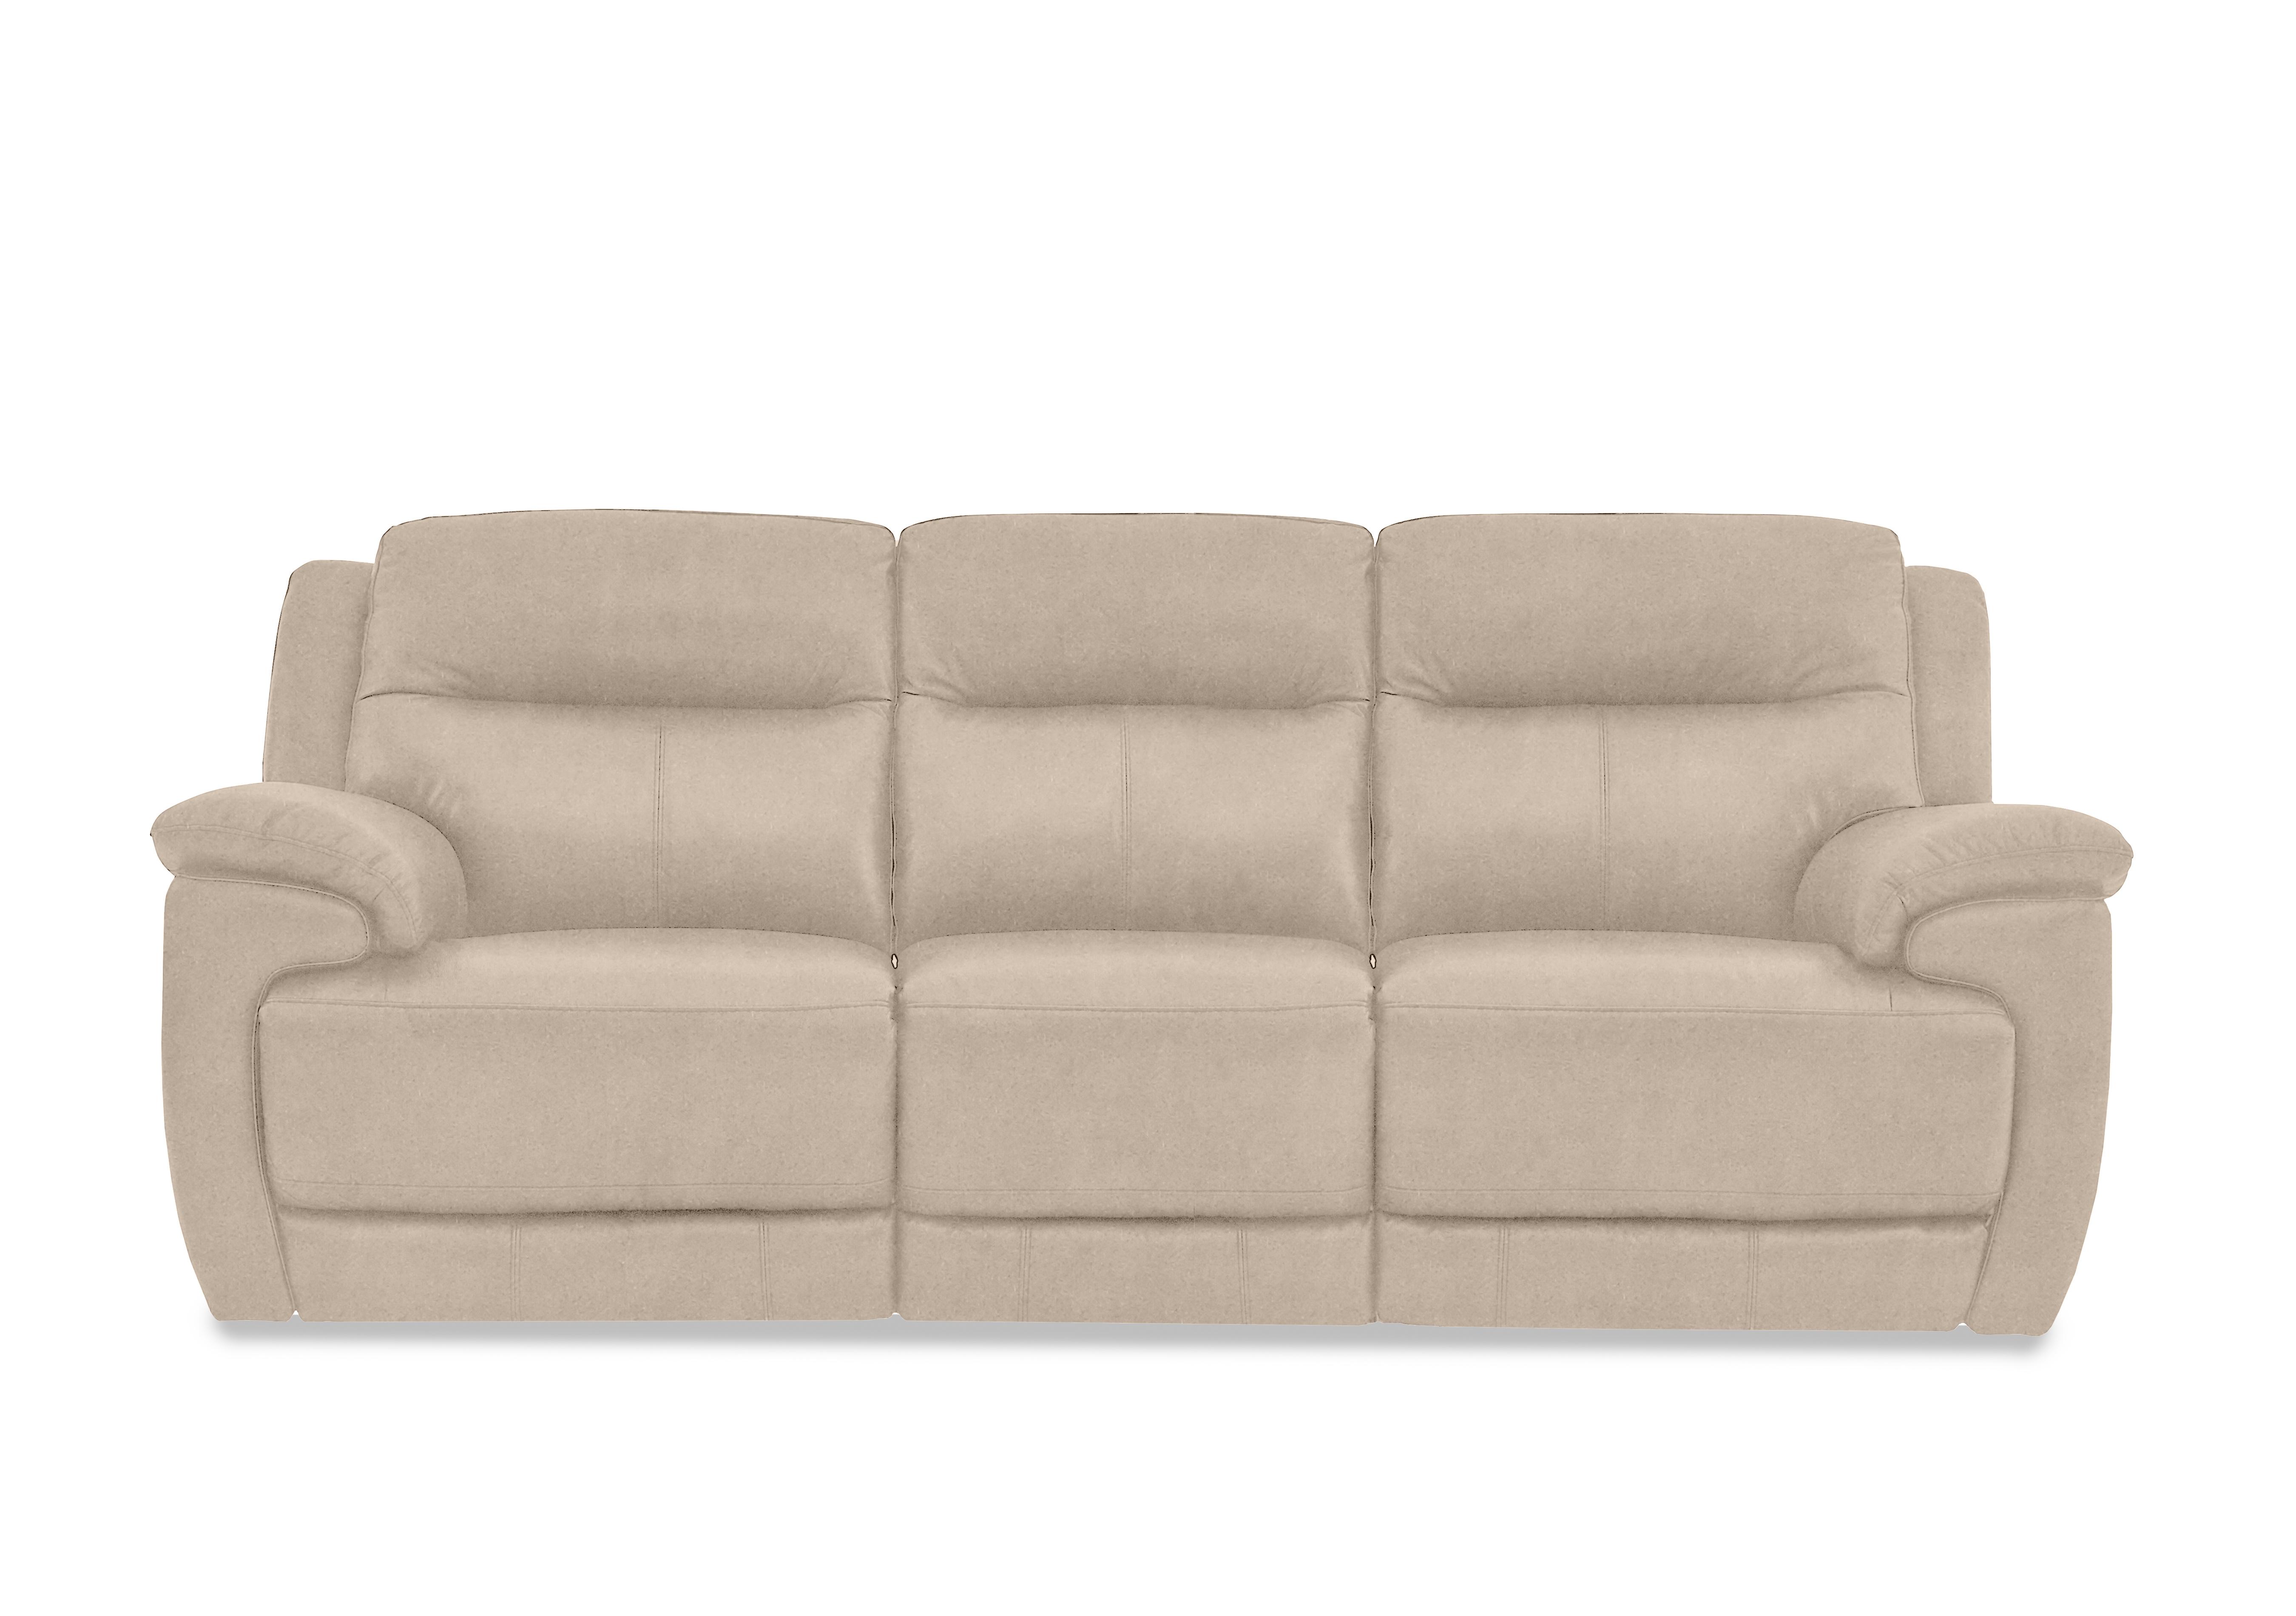 Touch 3 Seater Heavy Duty Fabric Sofa in Bfa-Bnn-R26 Fv2 Cream on Furniture Village